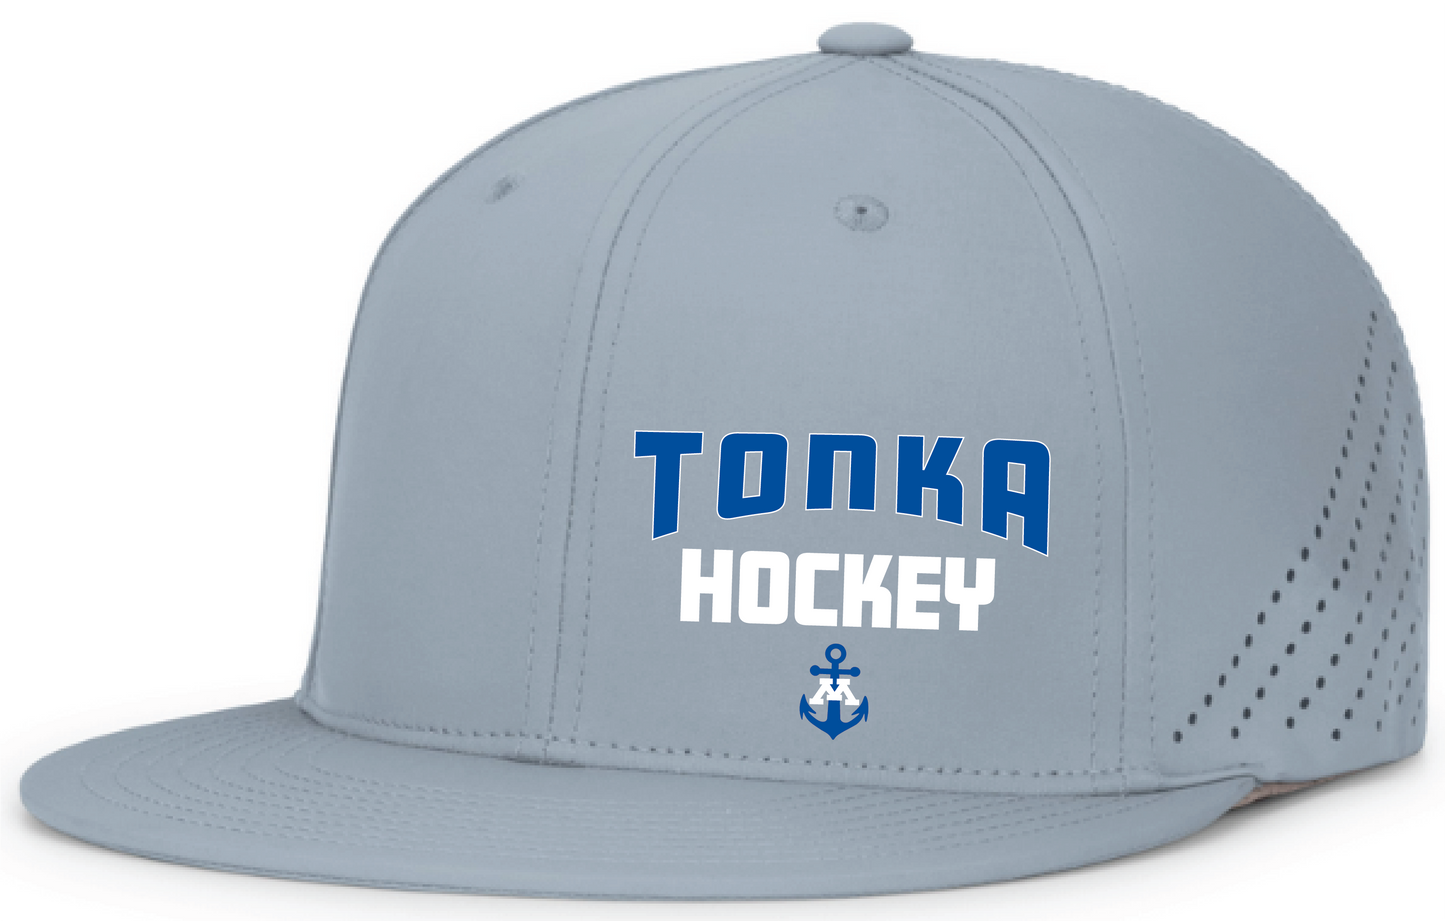 Tonka Hockey Small Anchor Silver